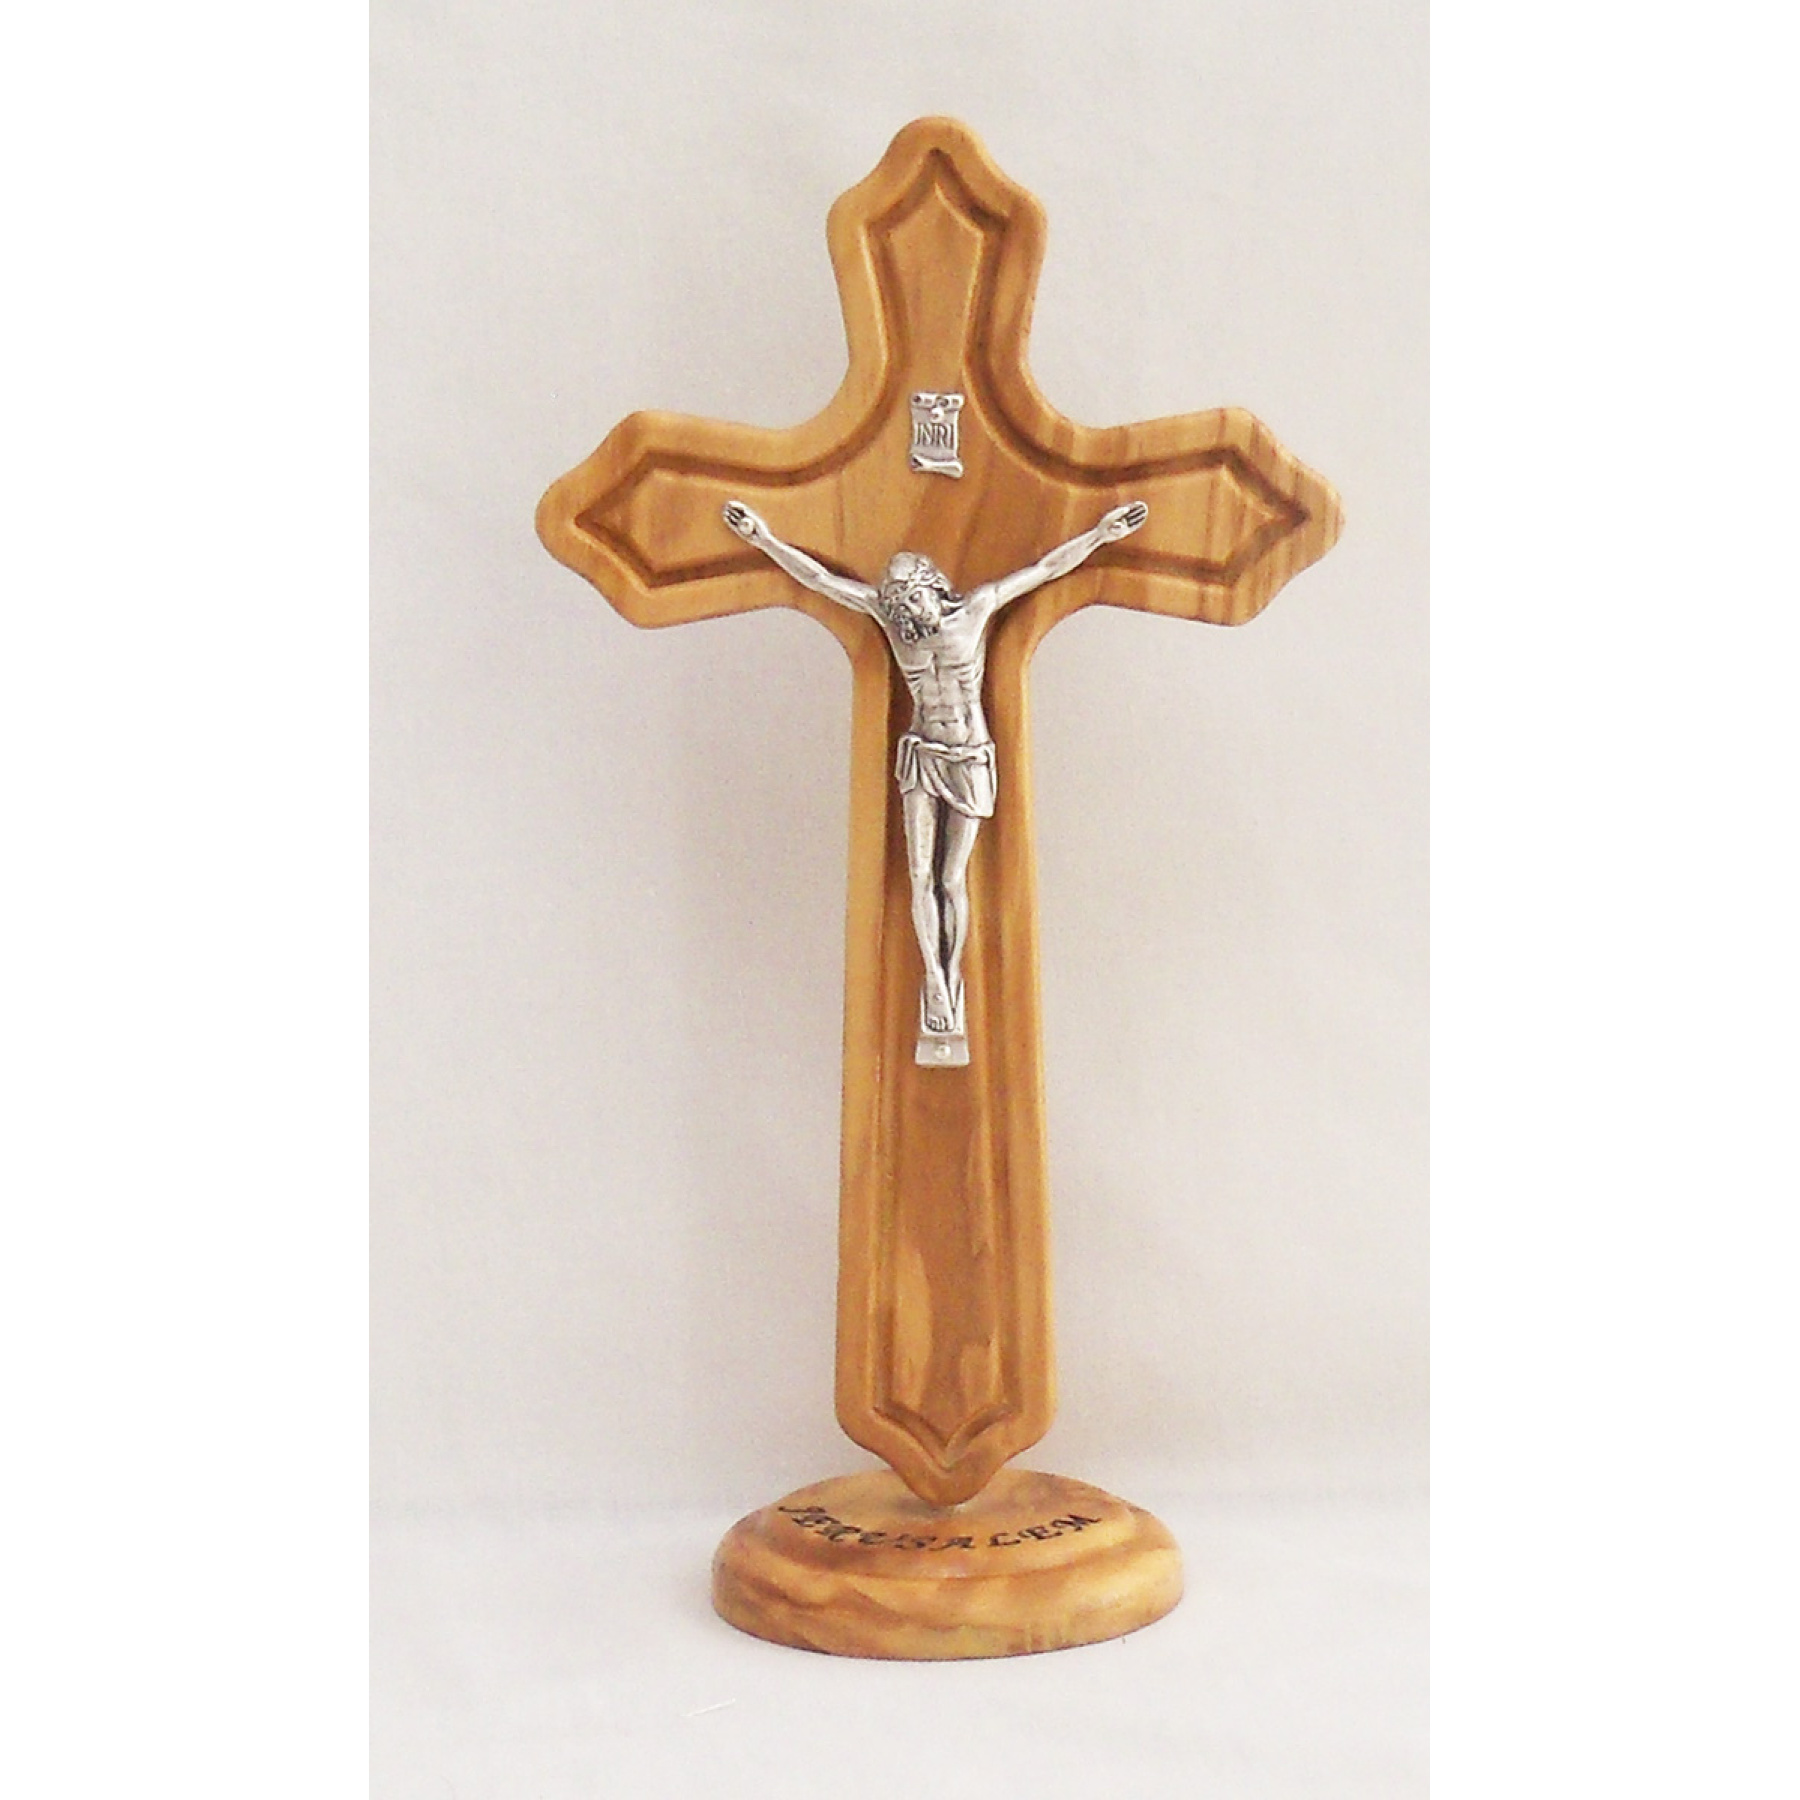 Modern and stylized standing crucifix